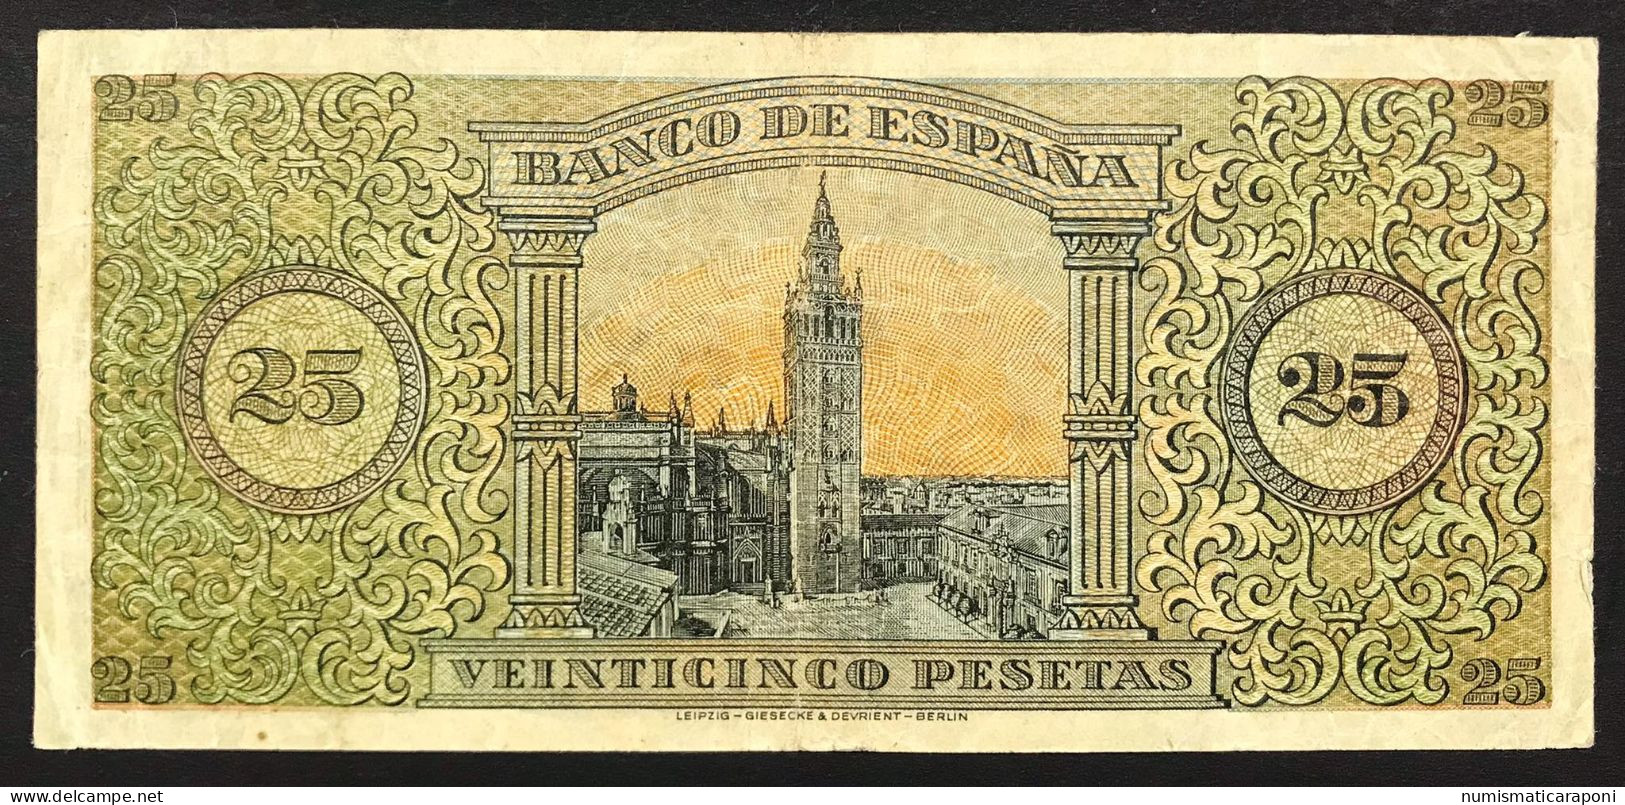 Spagna Espana Espagne 50 Pesetas 1938 KM#111 LOTTO 2199 - 500 Pesetas